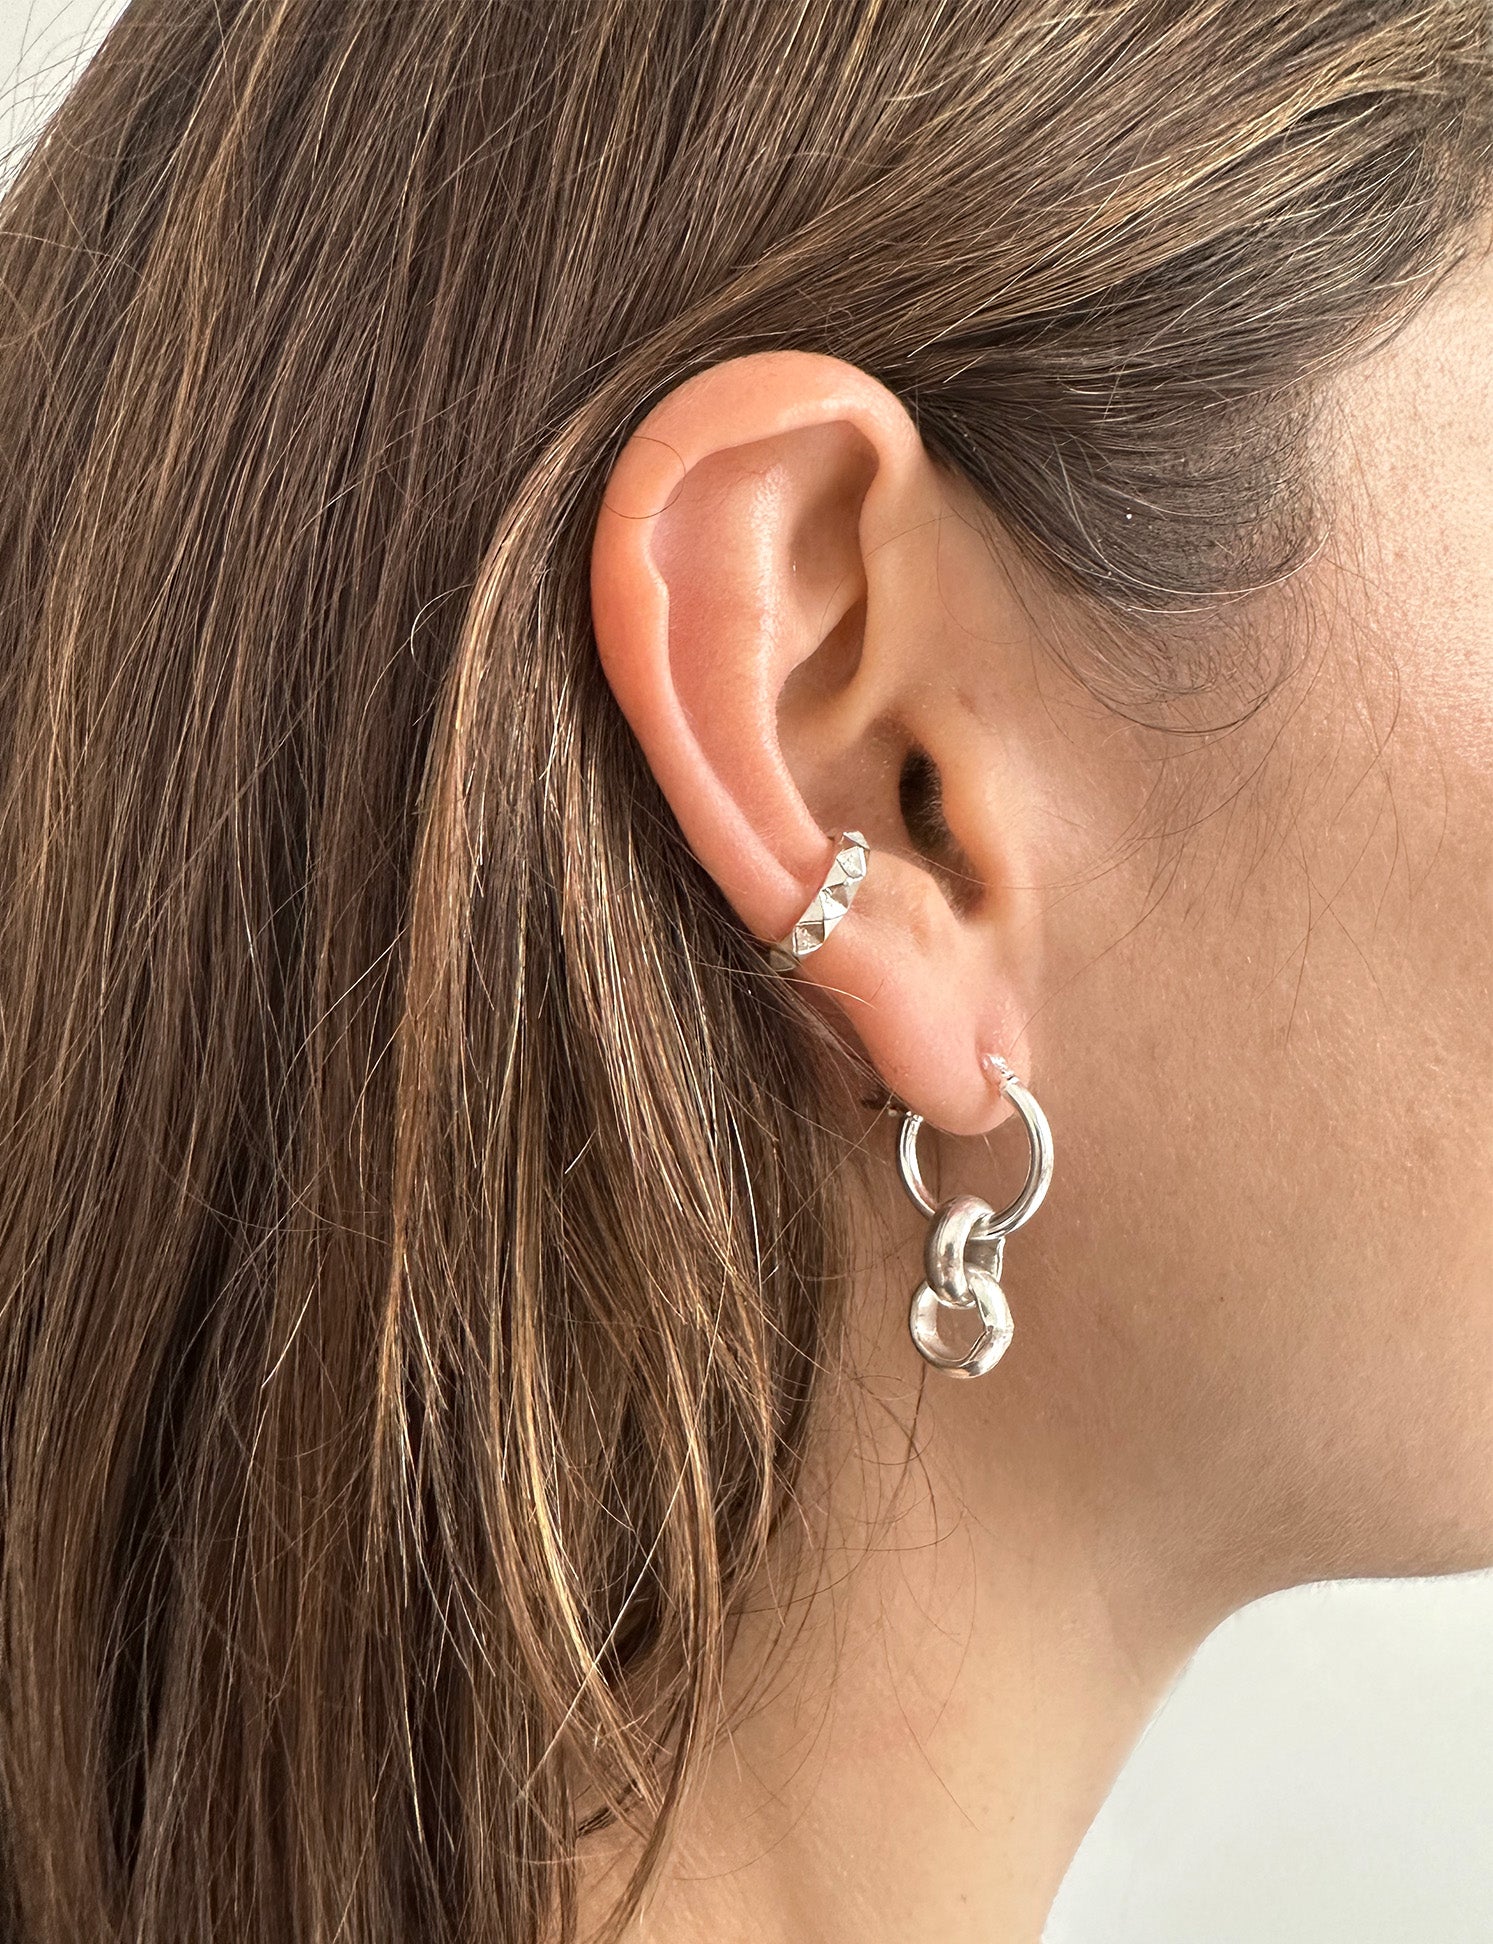 Men's women ear cuff earring in gold or silver Brooklyn New York 